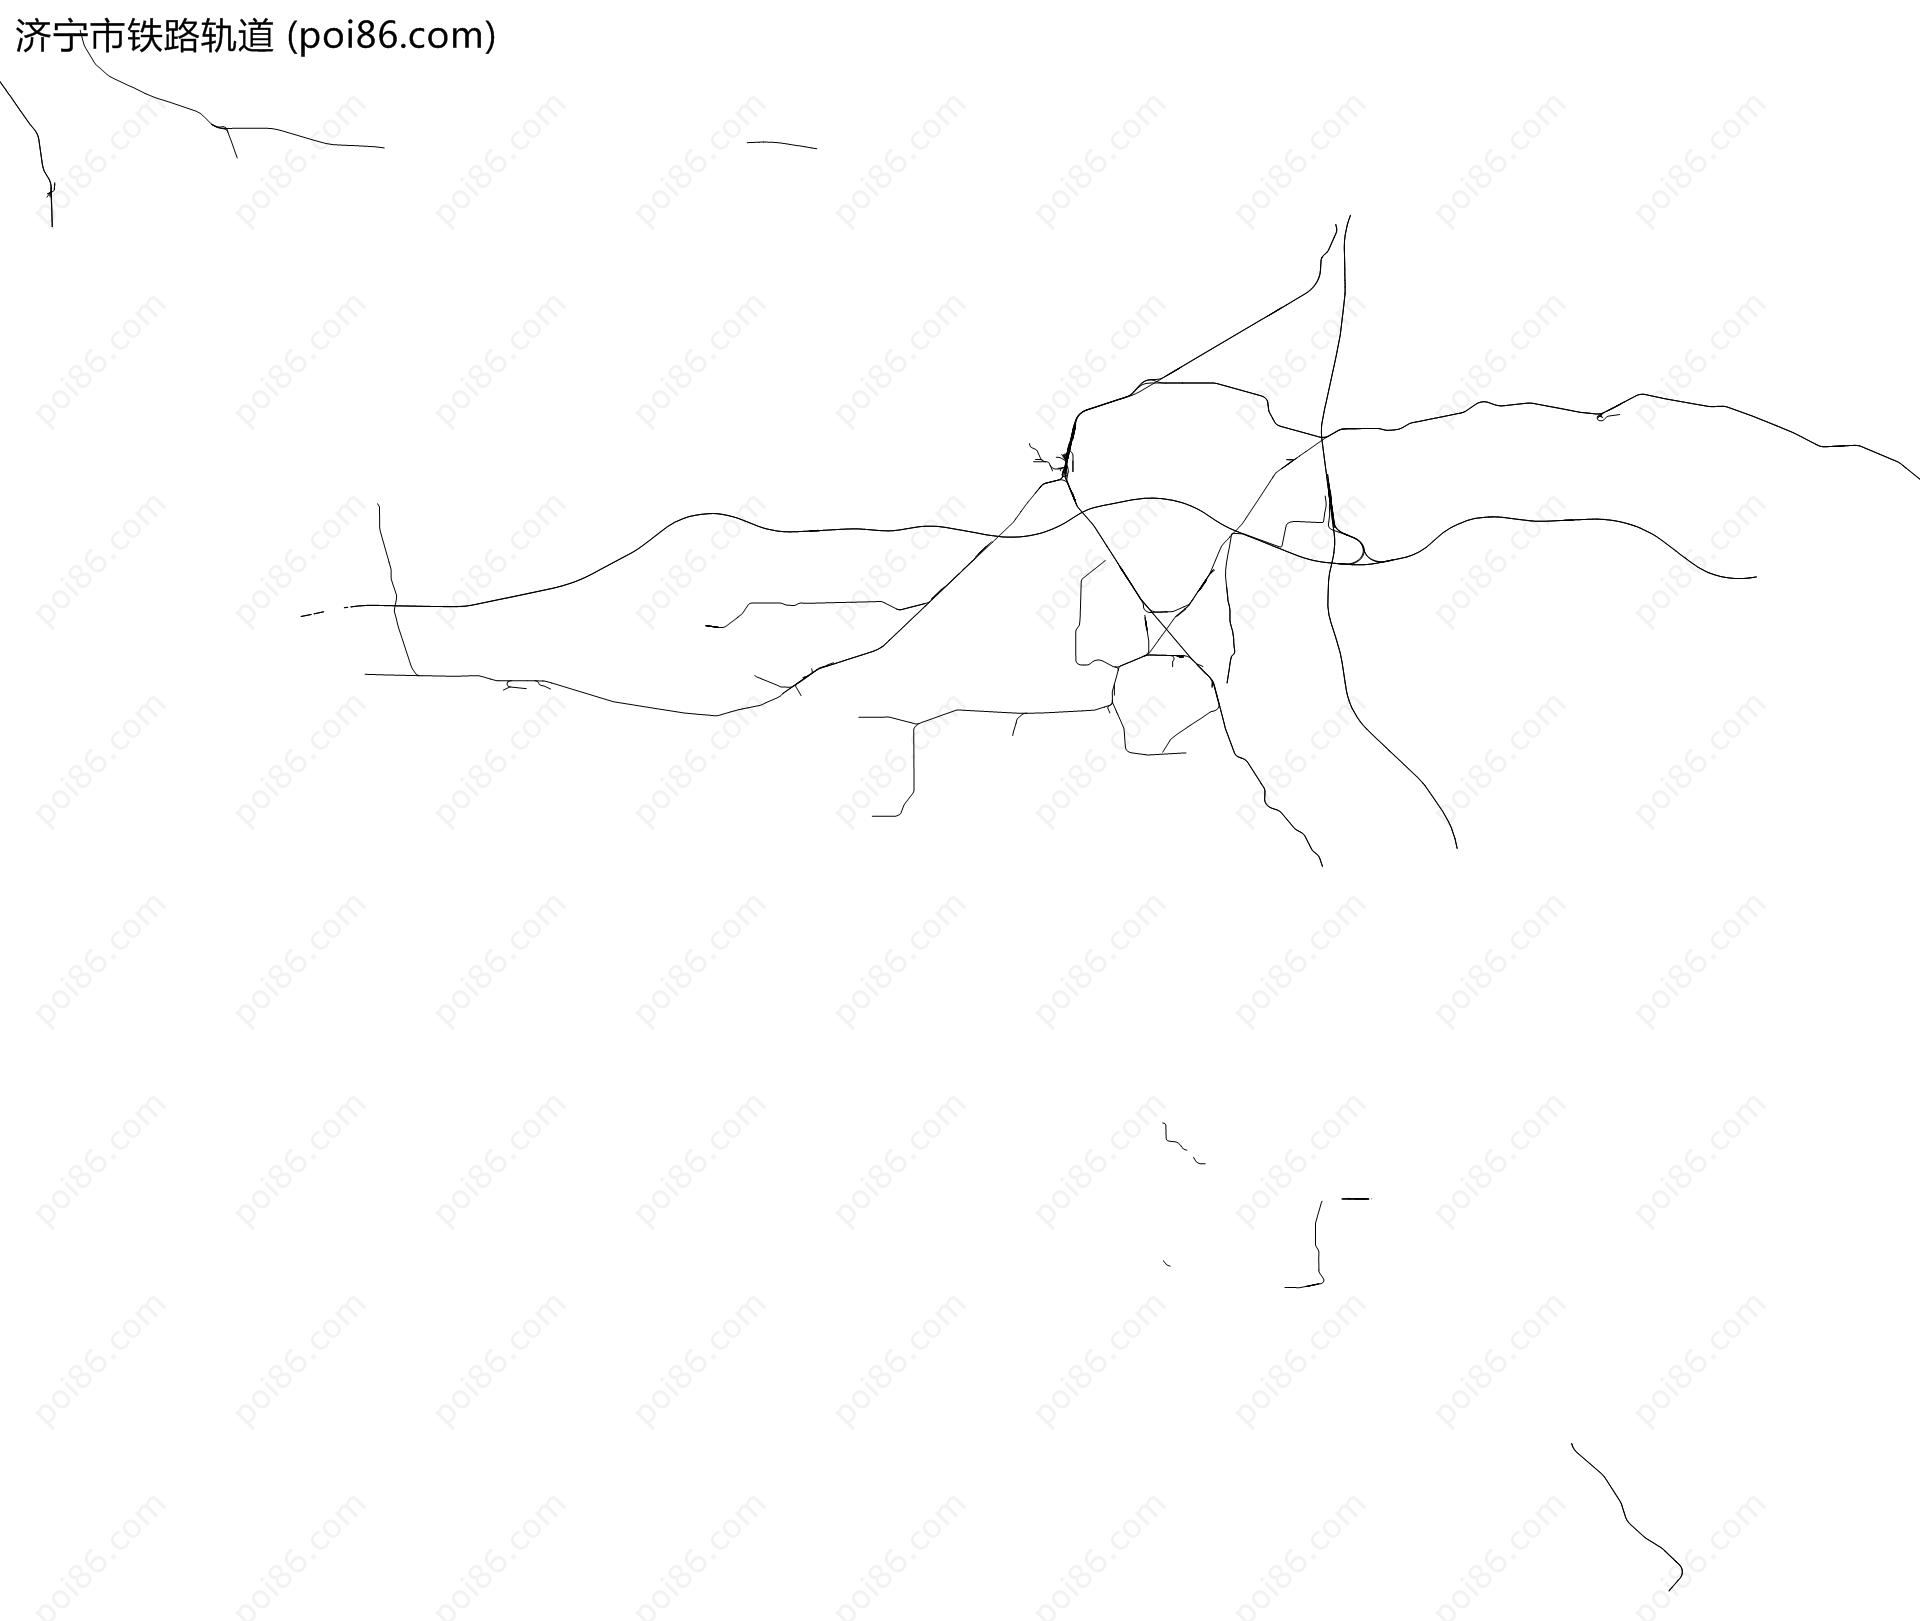 济宁市铁路轨道地图